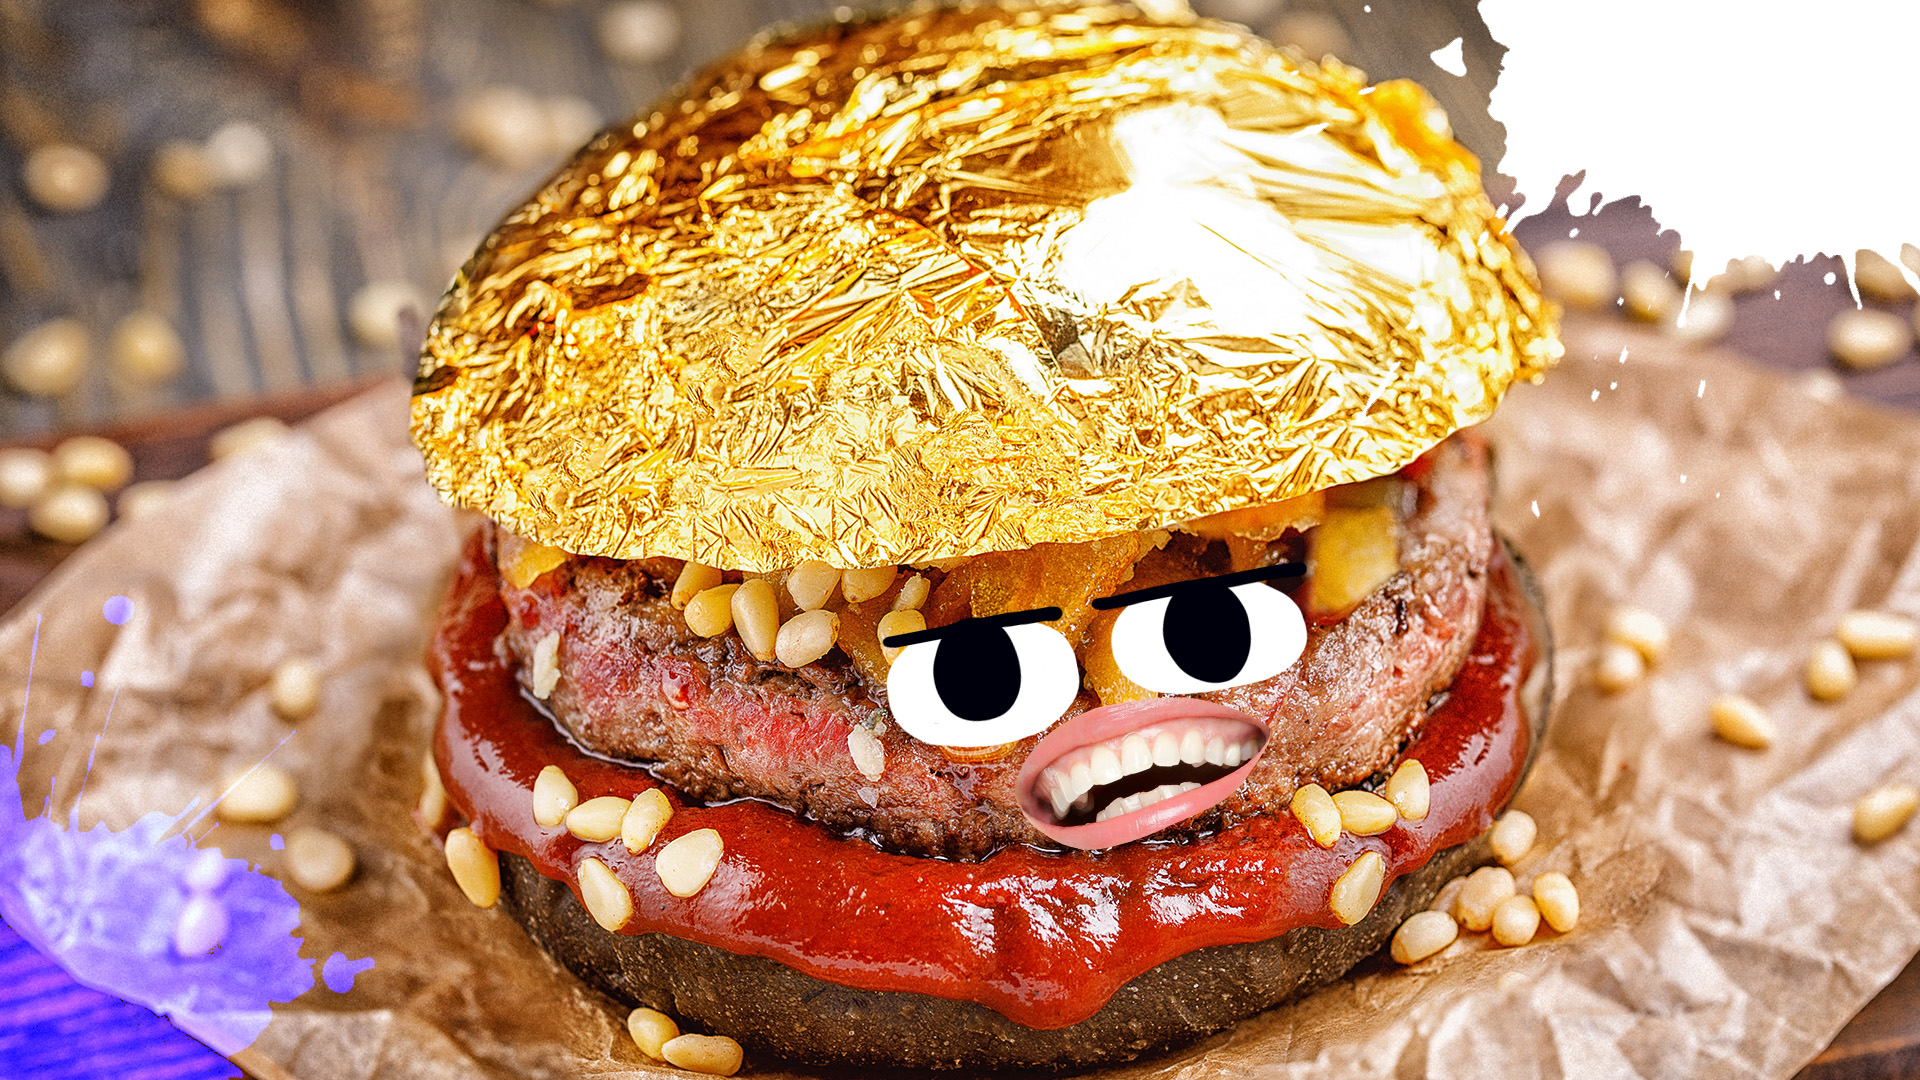 A godly cheeseburger